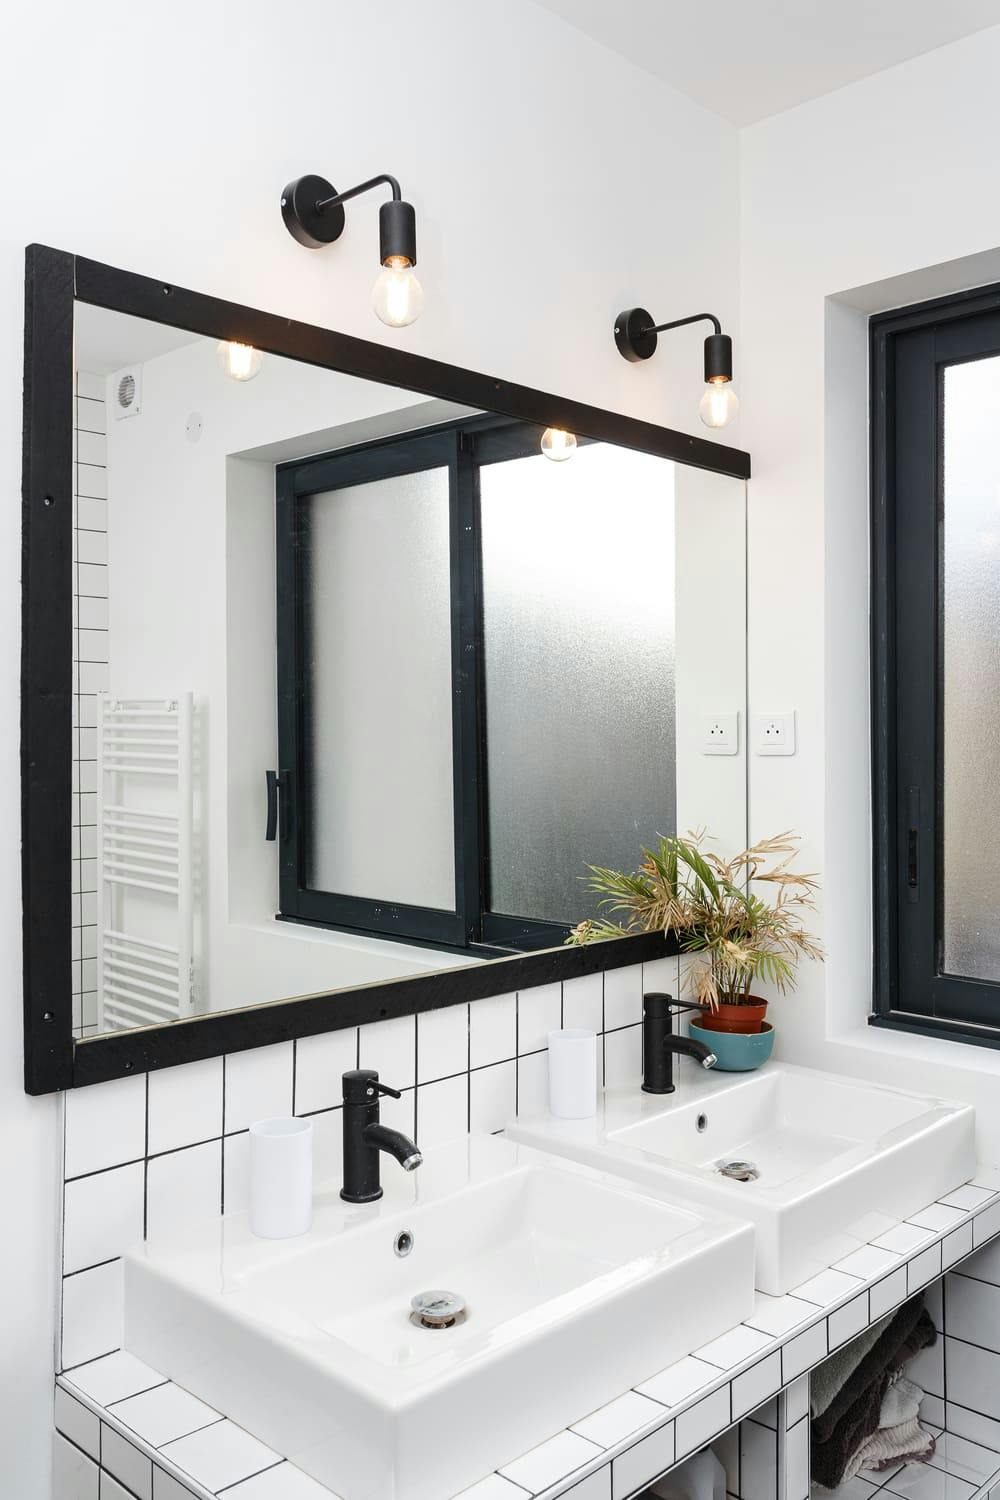 Décoration salle de bain : Top 10 idées déco